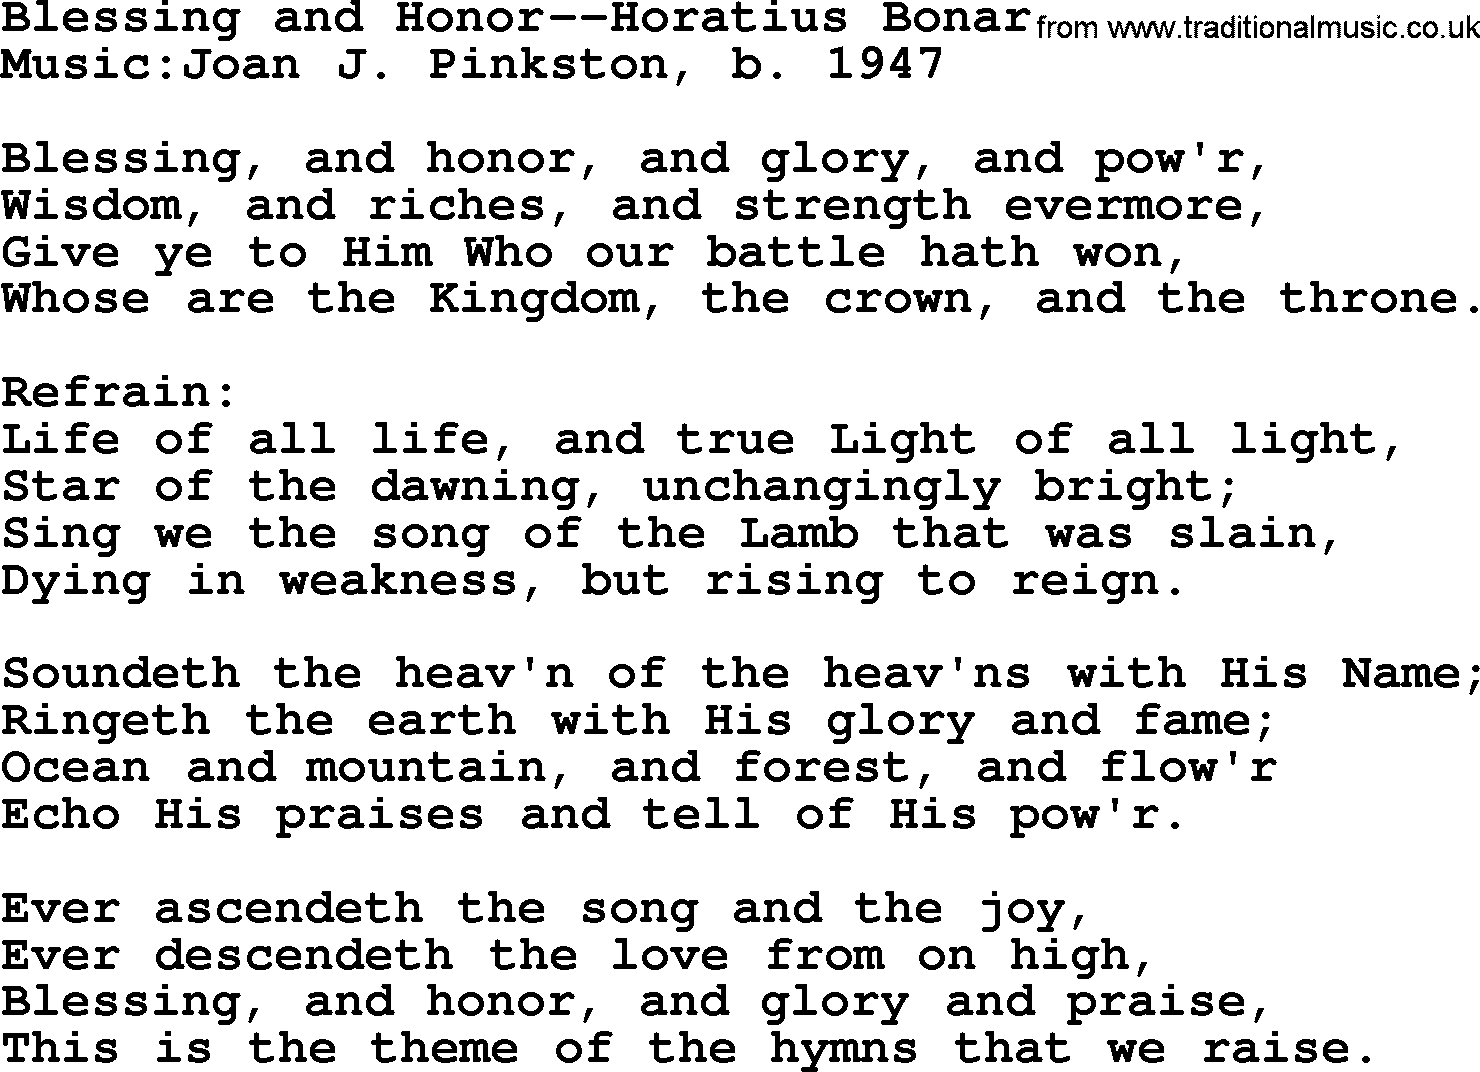 Ascension Hymn Blessing And HonorHoratius Bonar lyrics, and PDF